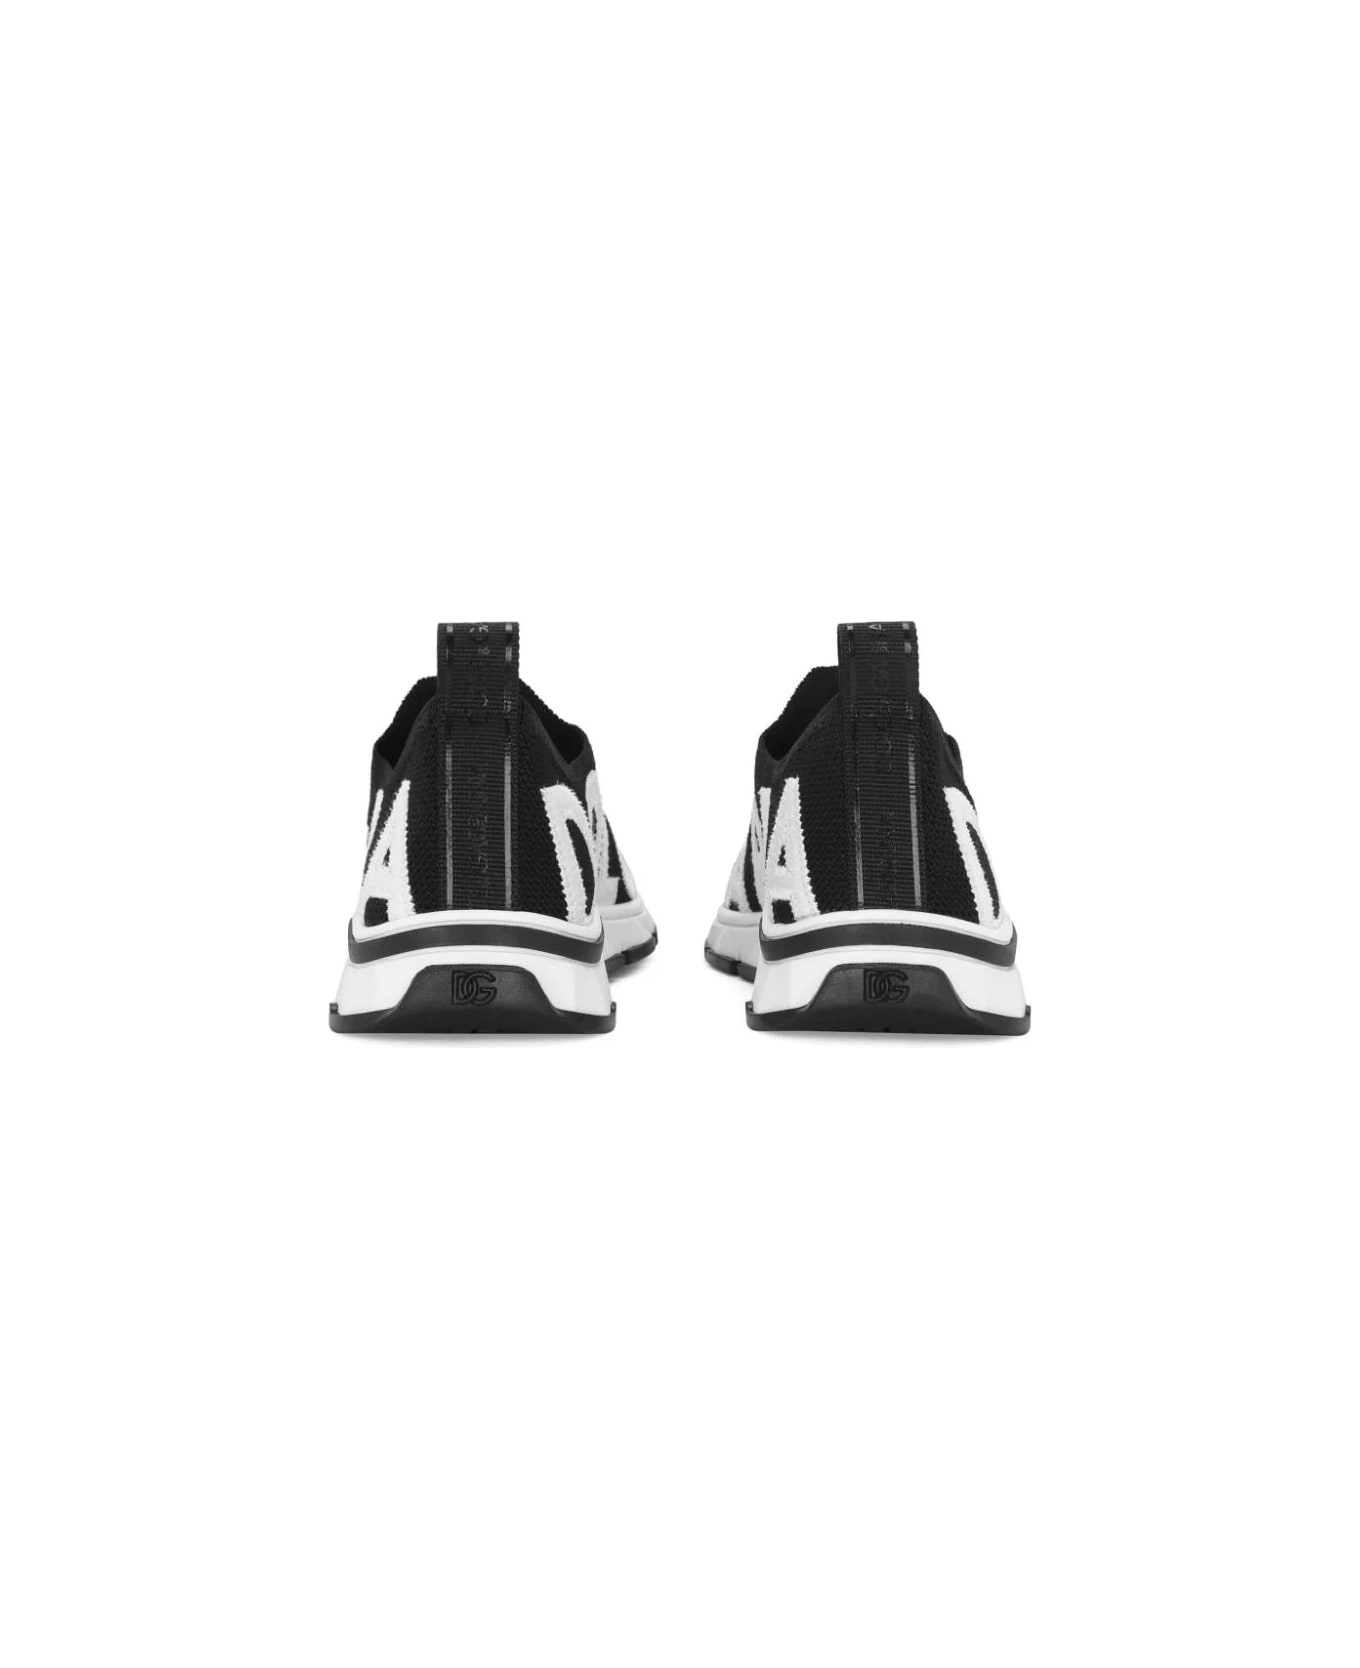 Dolce & Gabbana Black Socks Sneakers With Logo - Black